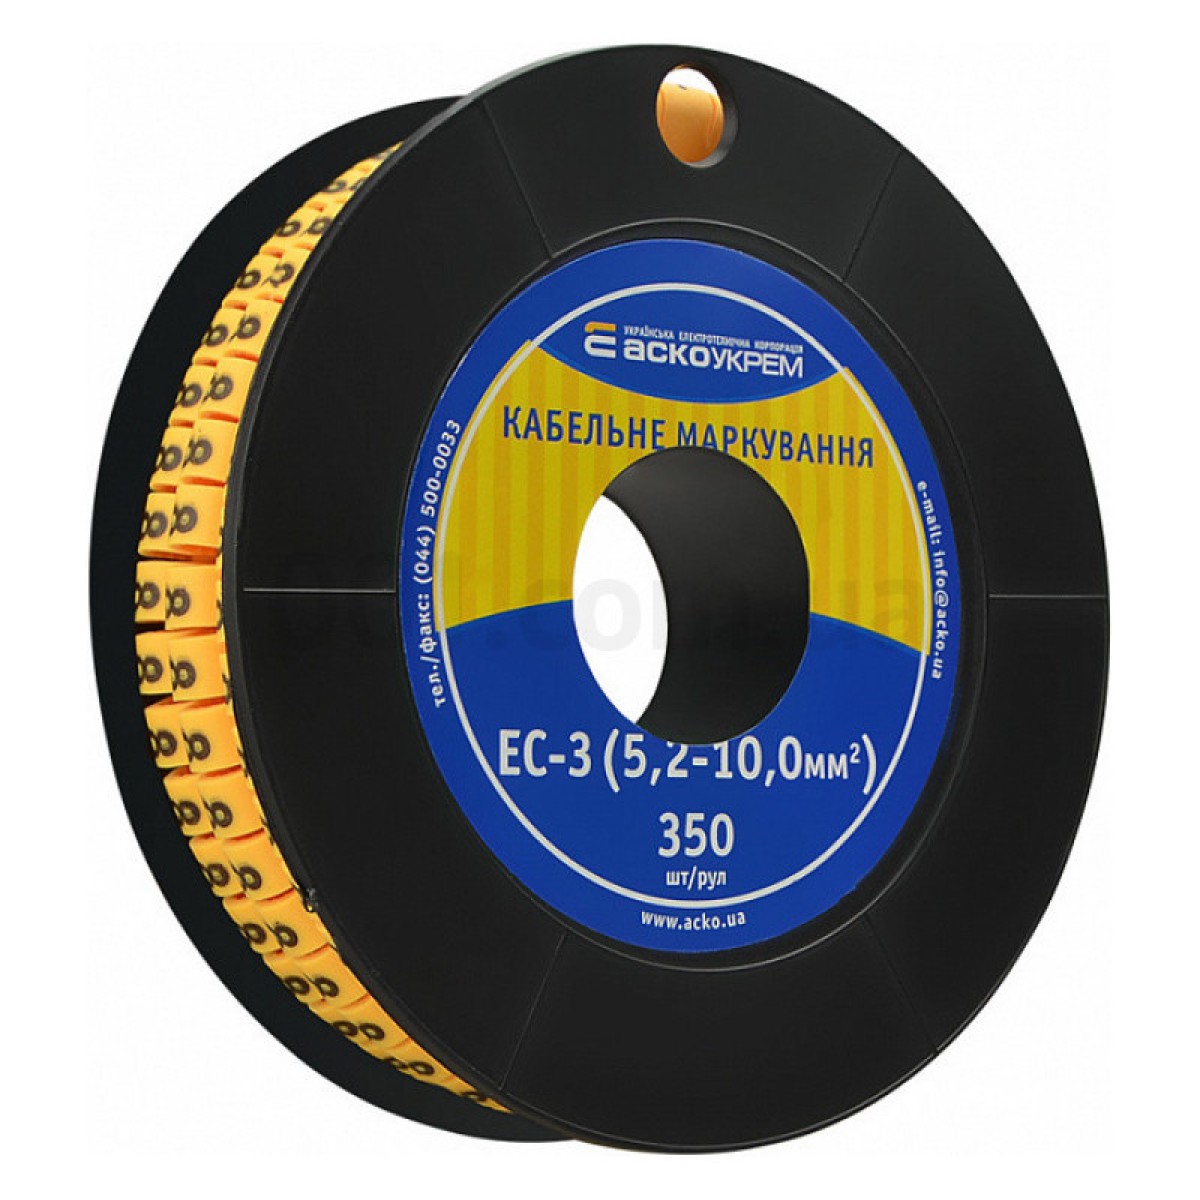 Маркування ЕС-3 для кабелю 5,2-10,0 мм² символ «8» (рулон 250 шт.), АСКО-УКРЕМ 256_256.jpg